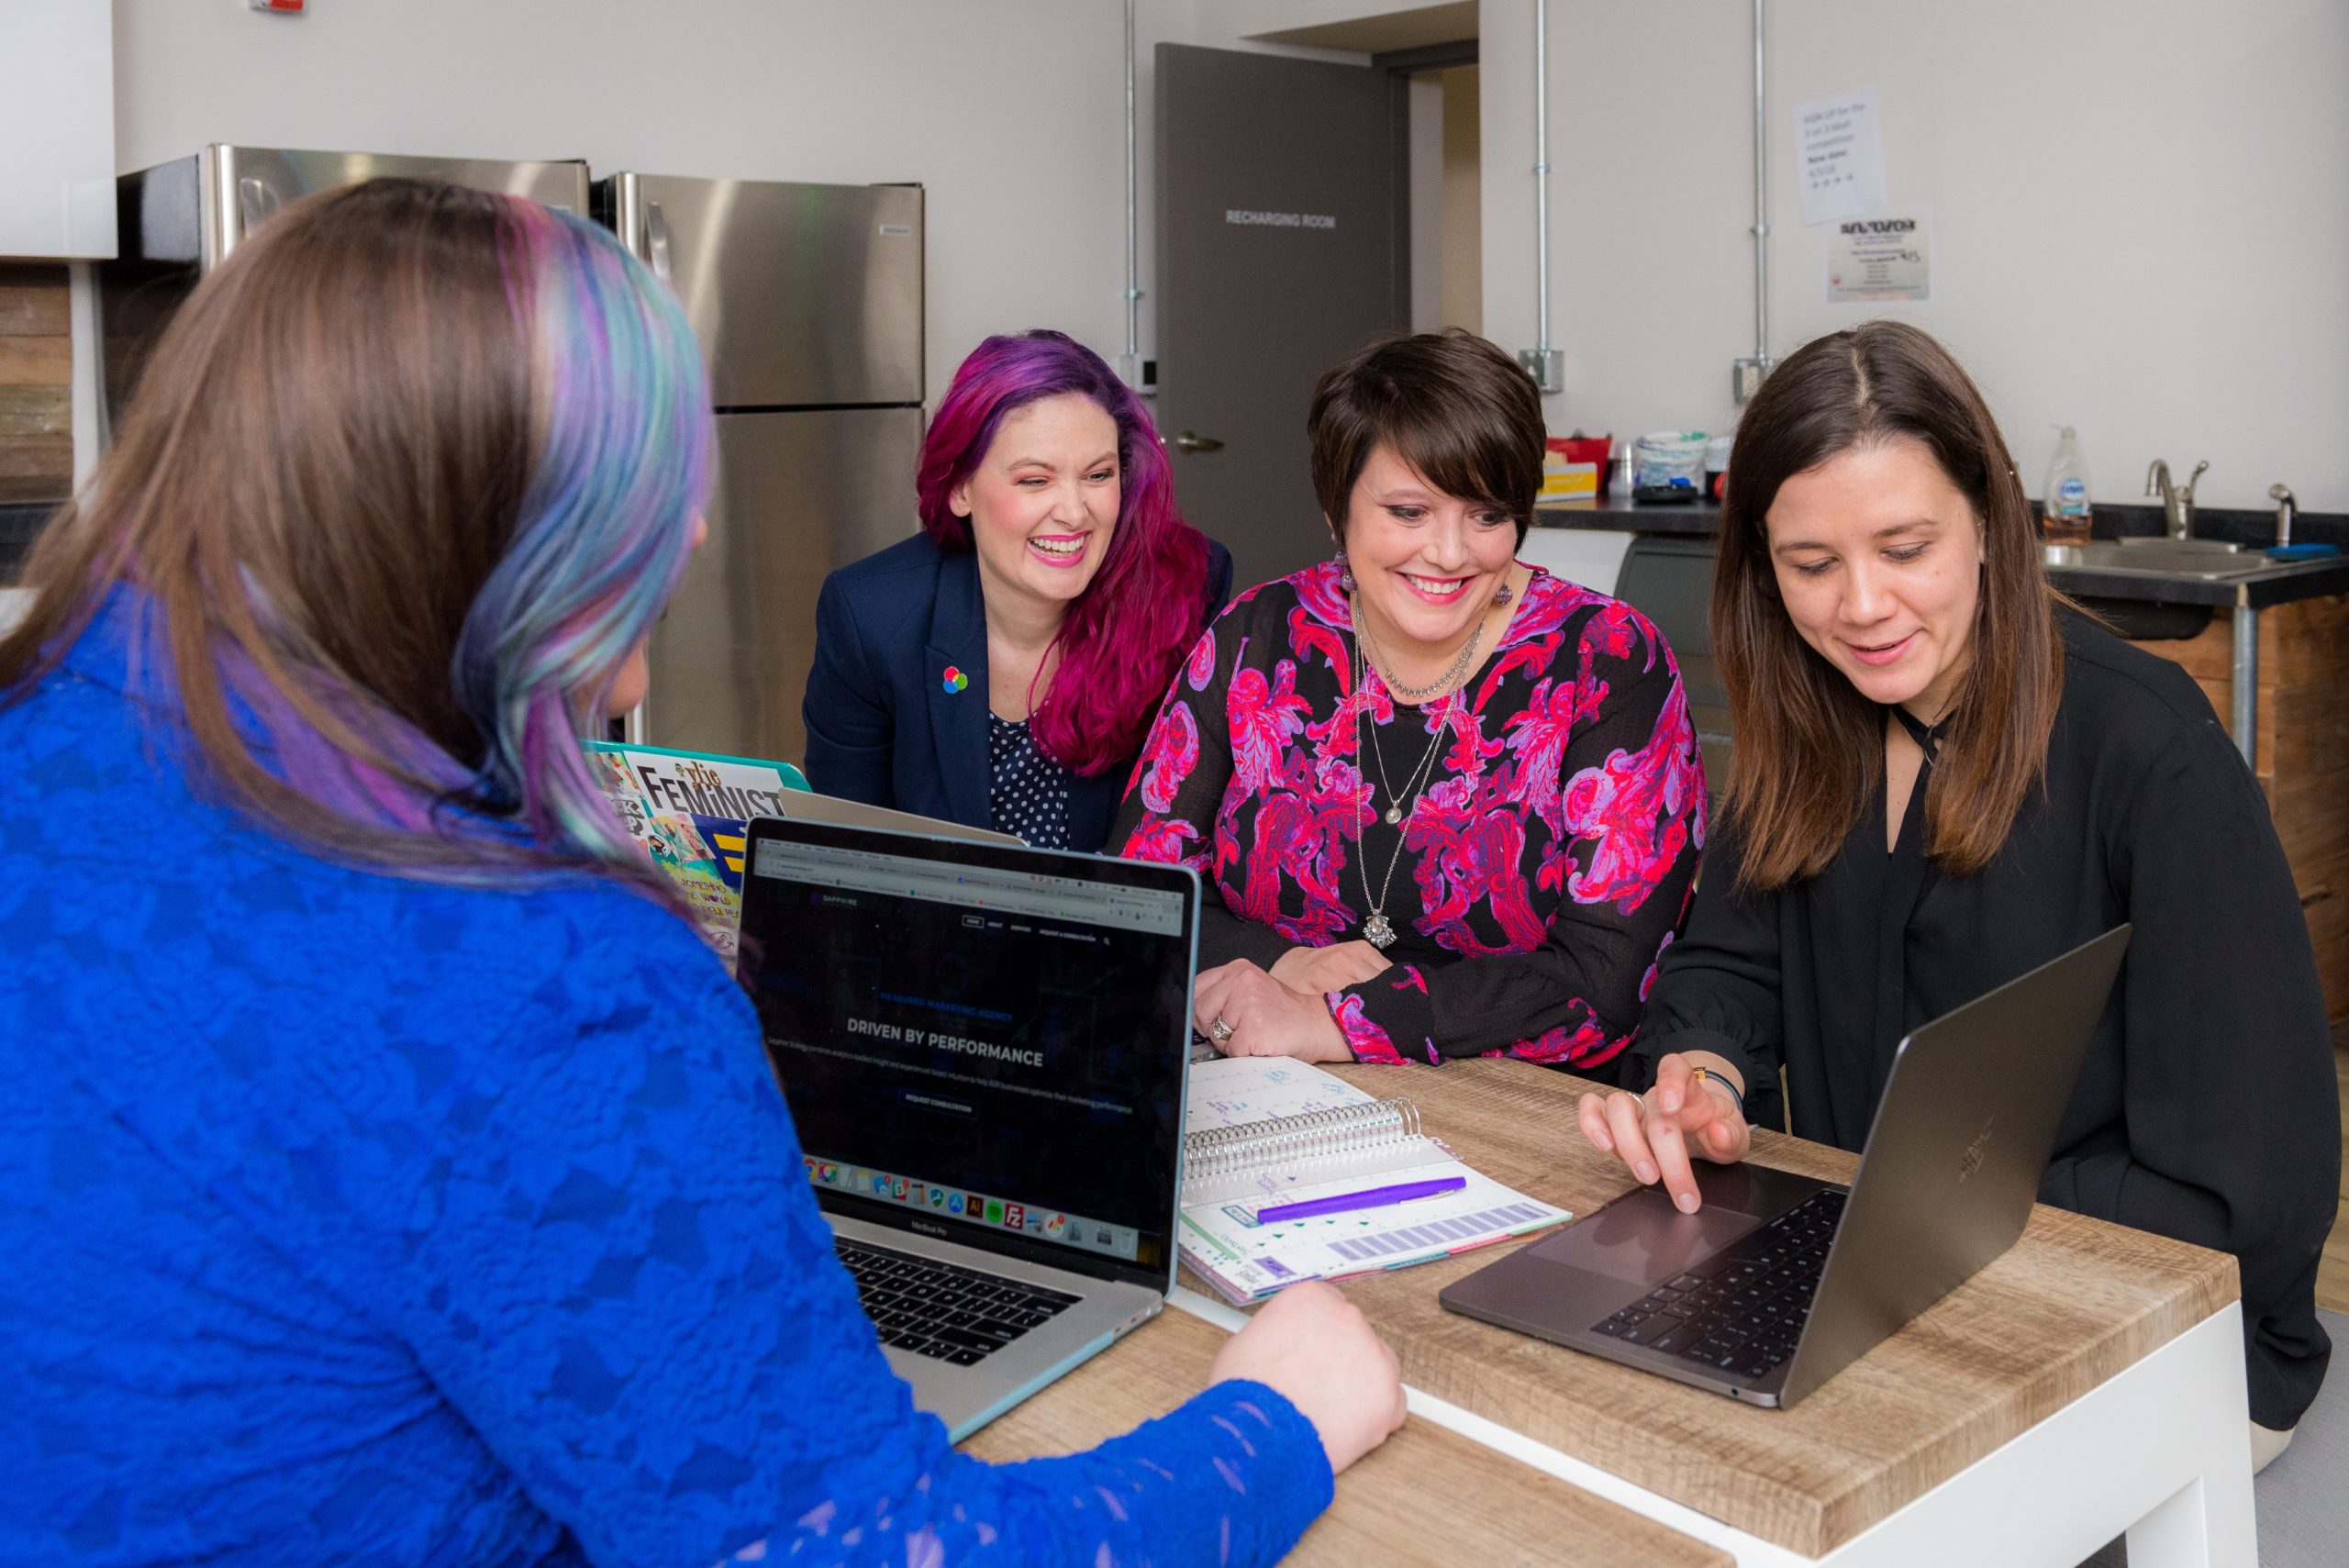 cuatro mujeres independientes discutiendo juntas algo que una de ellas está presentando desde una computadora portátil mientras marcan la diferencia en su carrera tecnológica